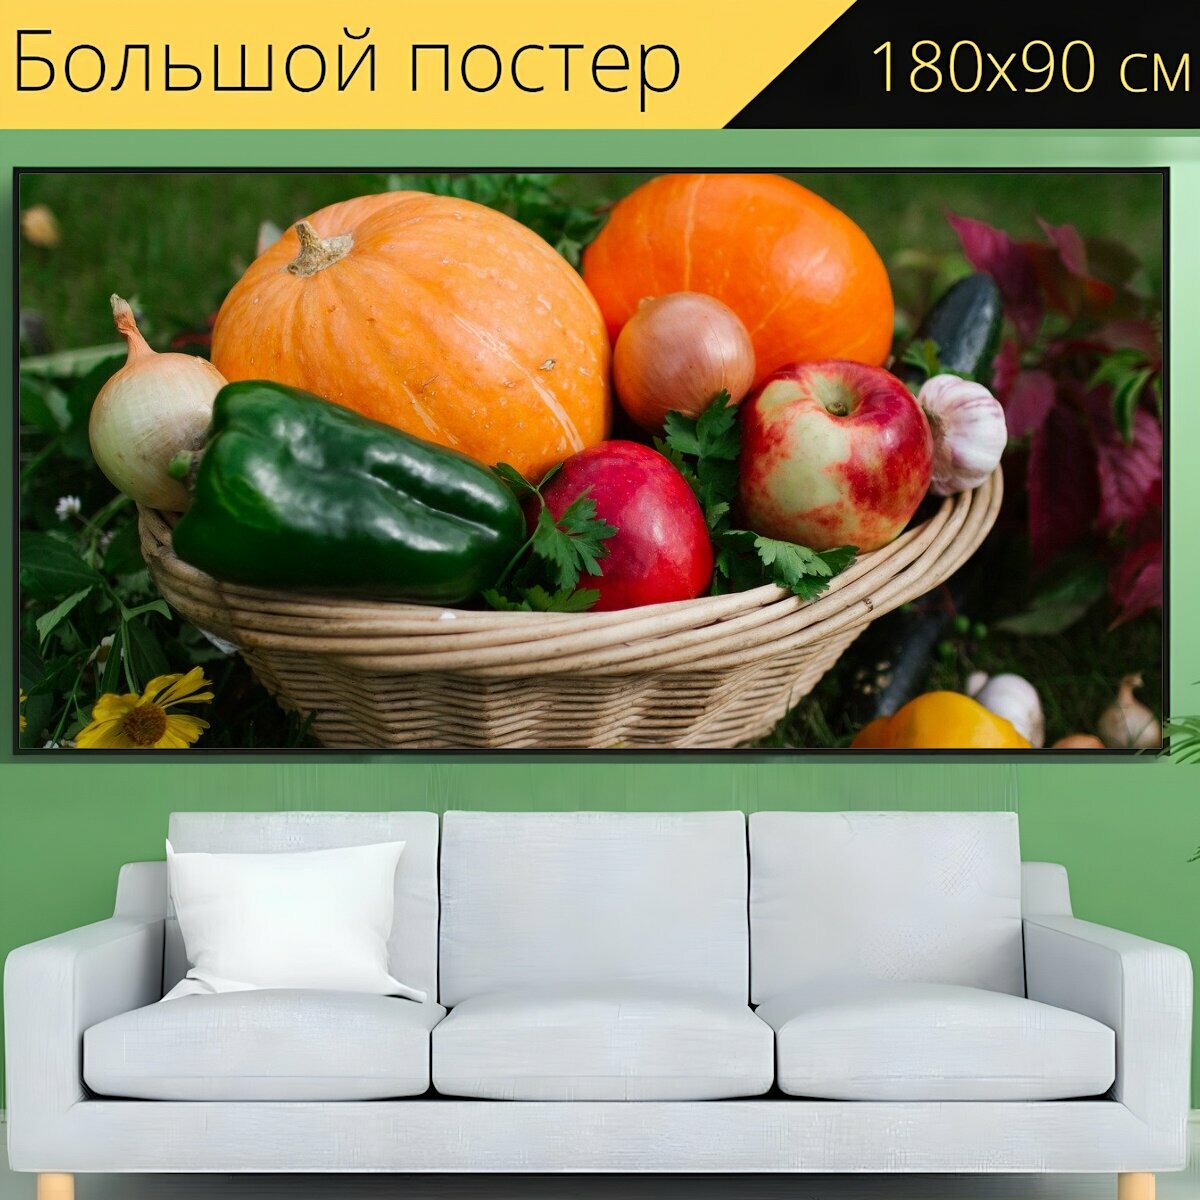 Большой постер "Овощи, корзина, осень" 180 x 90 см. для интерьера